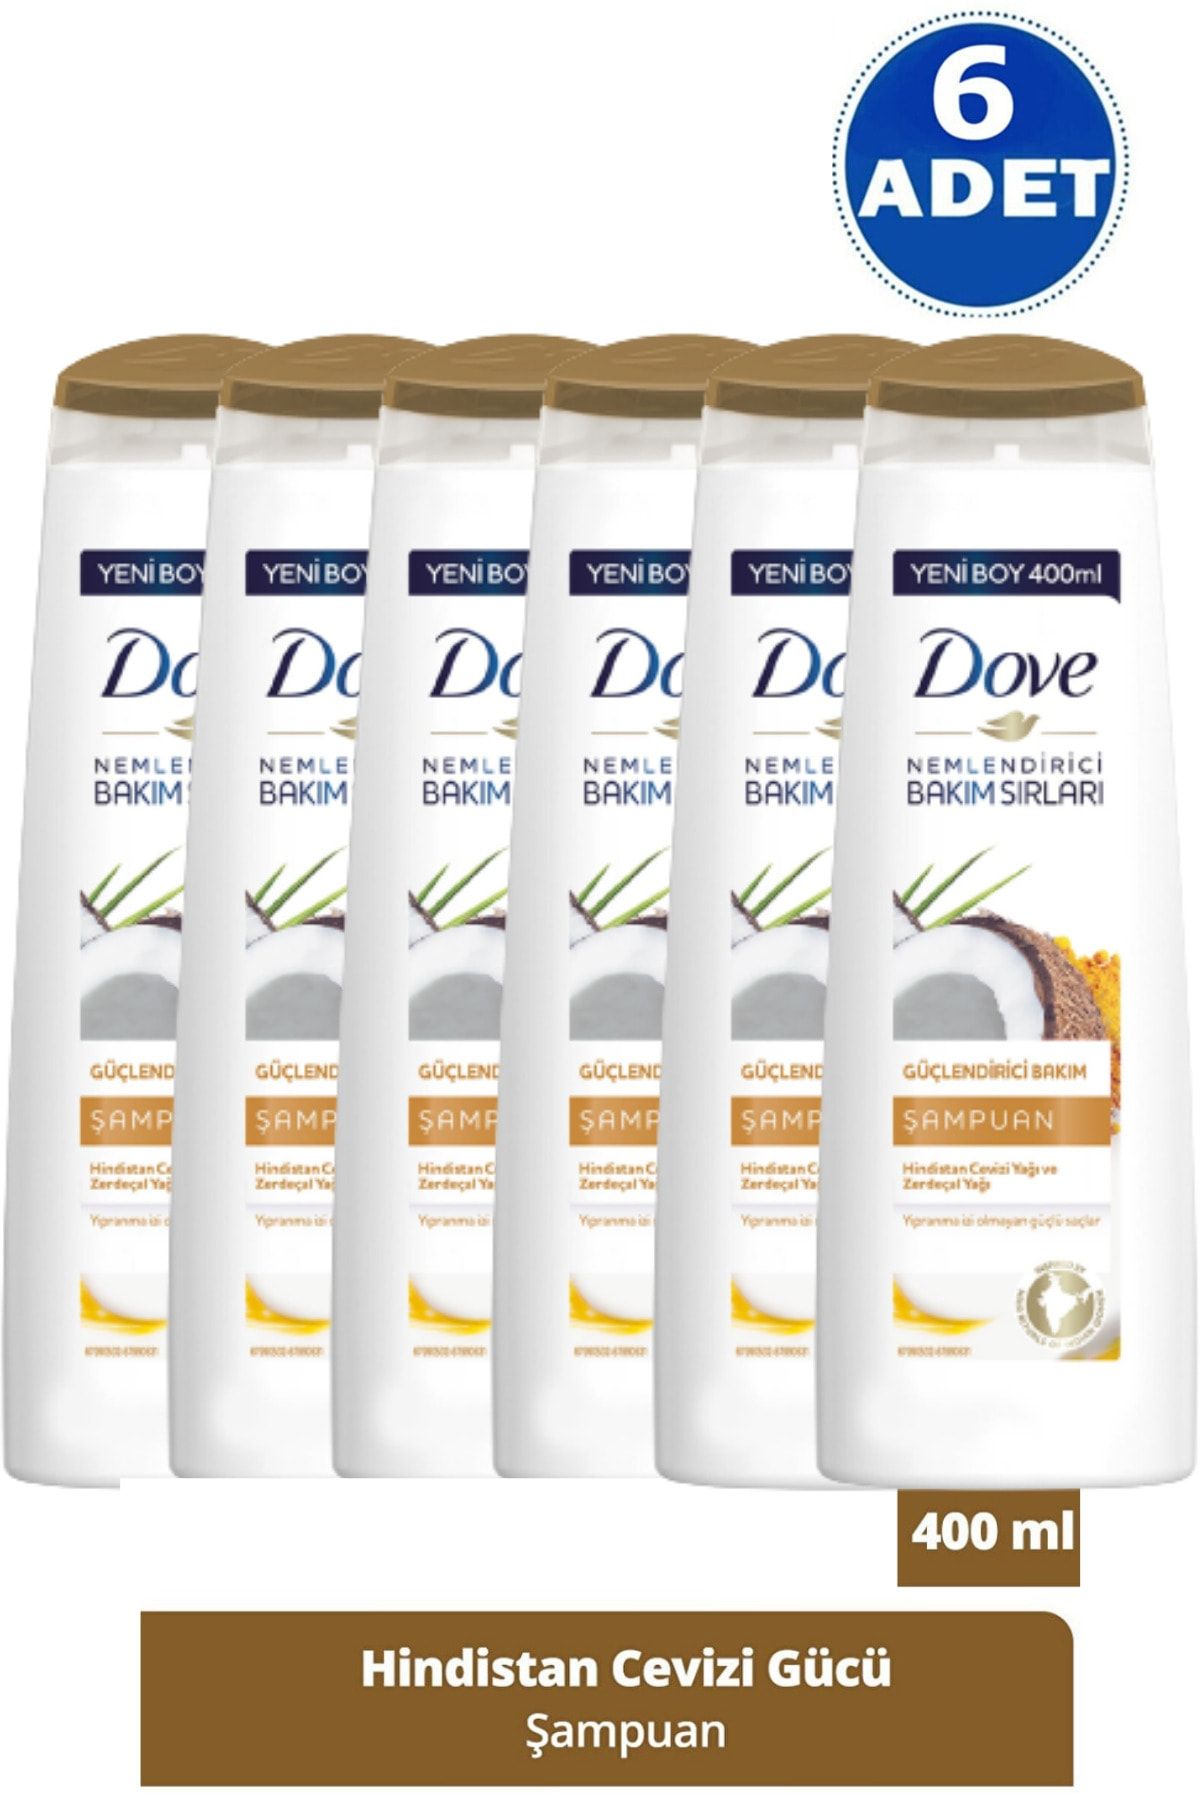 Dove Hindistan Cevizli Yağı Zerdeçal Yağı Güçlendirici Bakım Şampuan 400 Ml 6 Adet